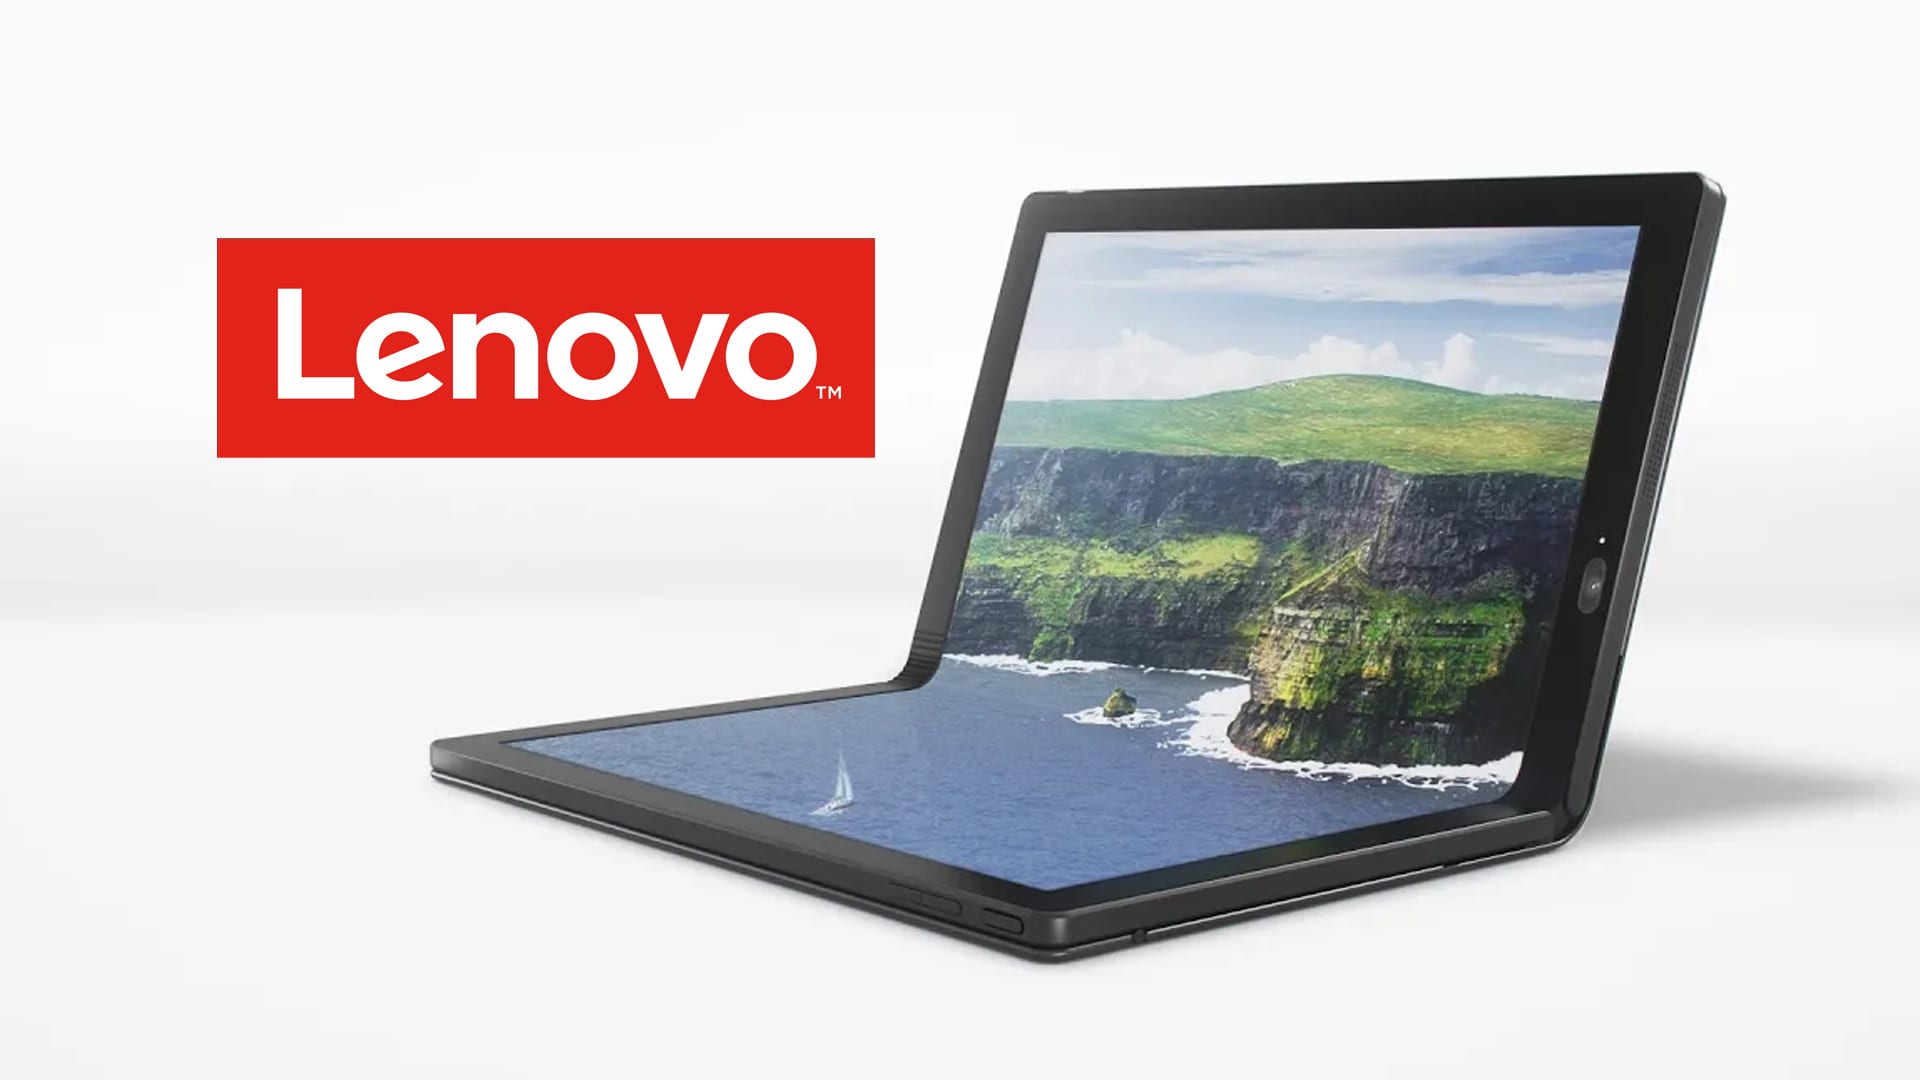 شركة Lenovo تستعد لإعتماد تسمية جديدة لسلسلة أجهزة ThinkPad في العام القادم 2020